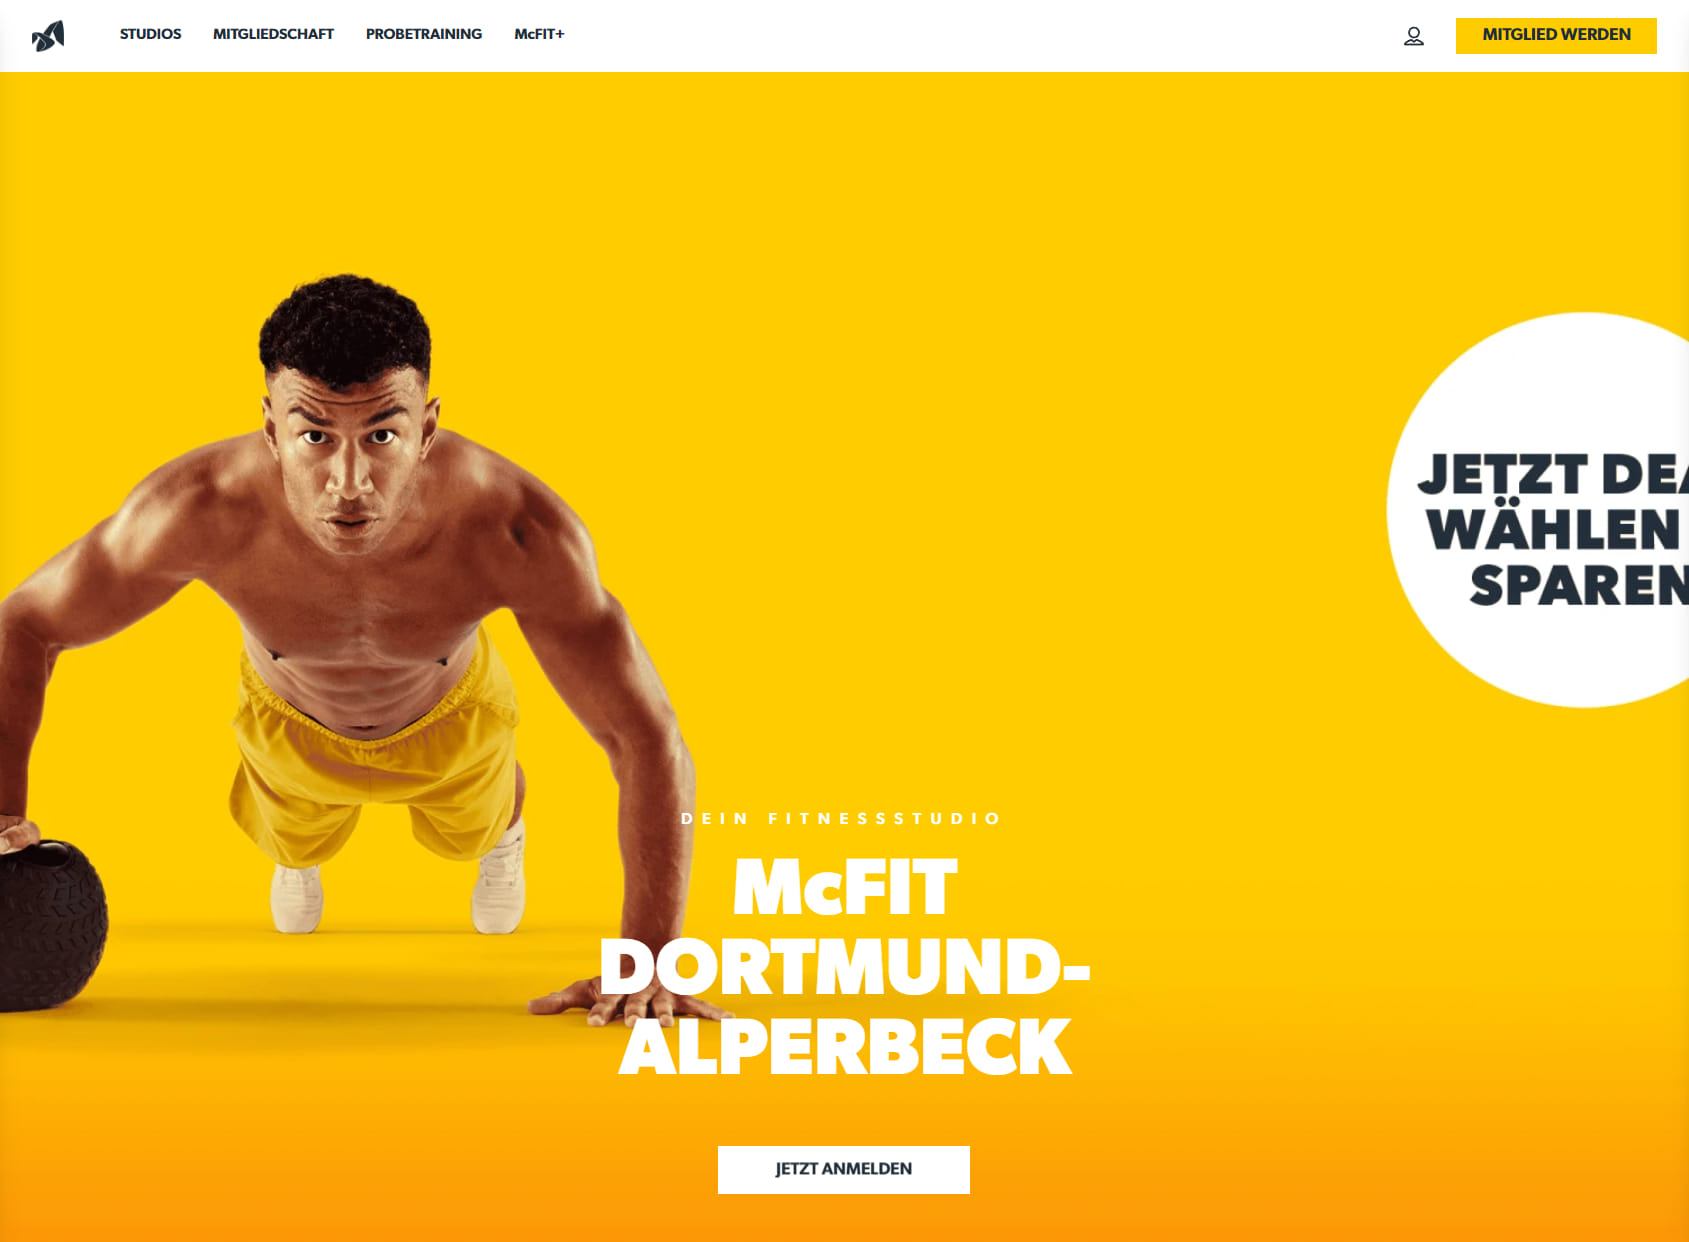 McFit gym Dortmund Aplerbeck